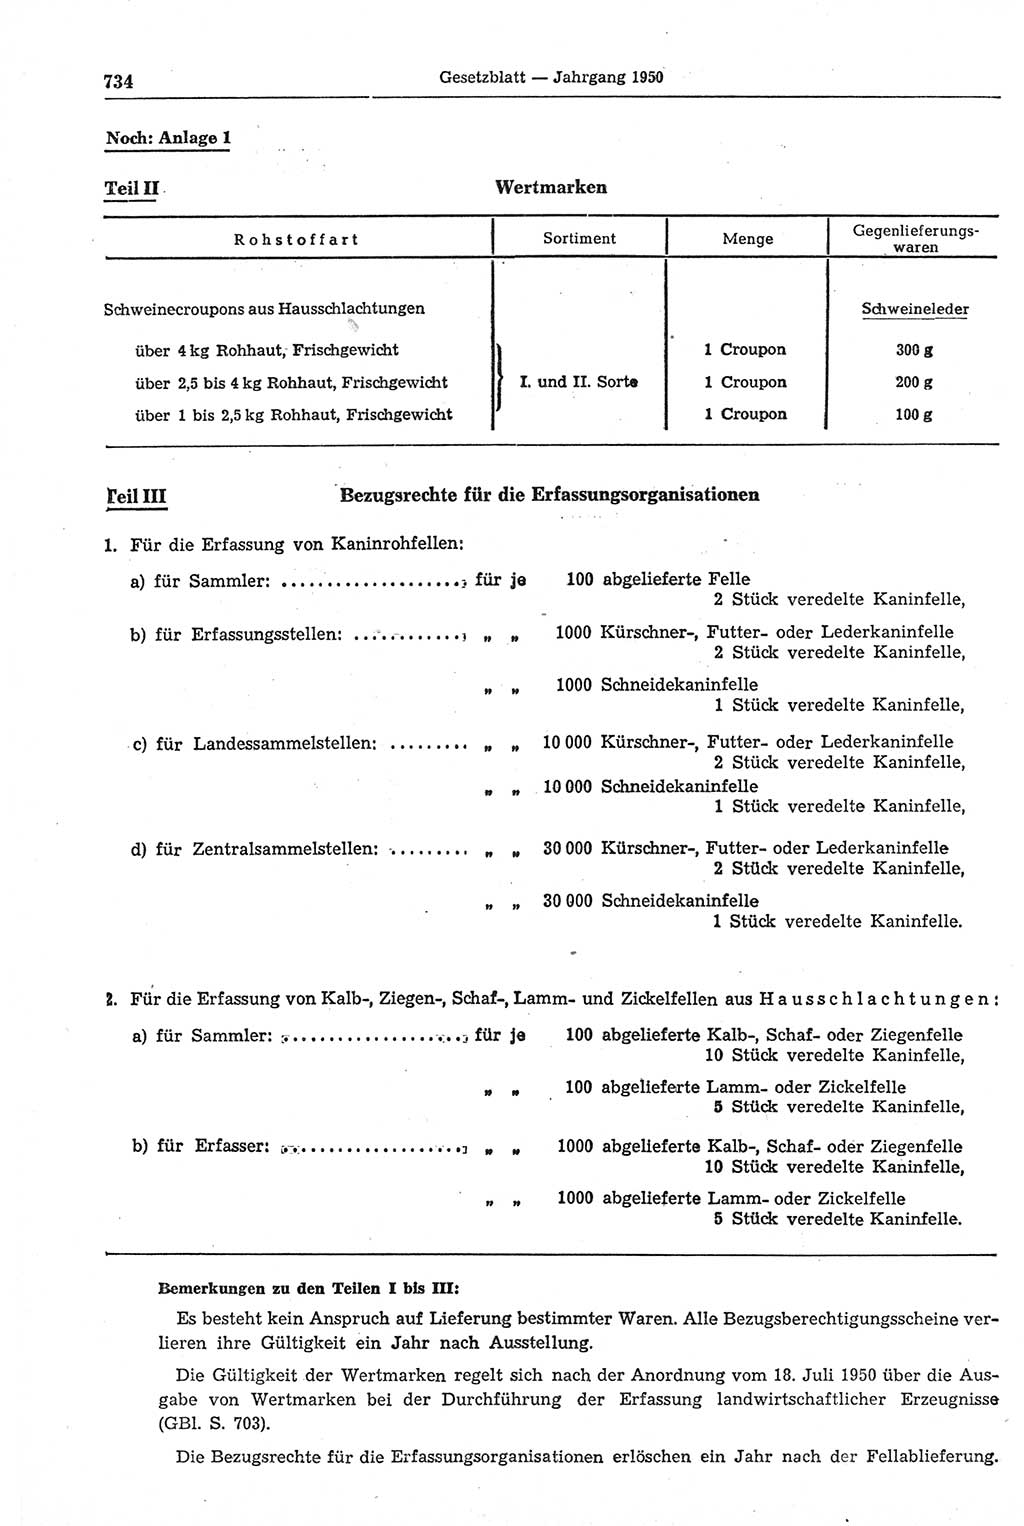 Gesetzblatt (GBl.) der Deutschen Demokratischen Republik (DDR) 1950, Seite 734 (GBl. DDR 1950, S. 734)